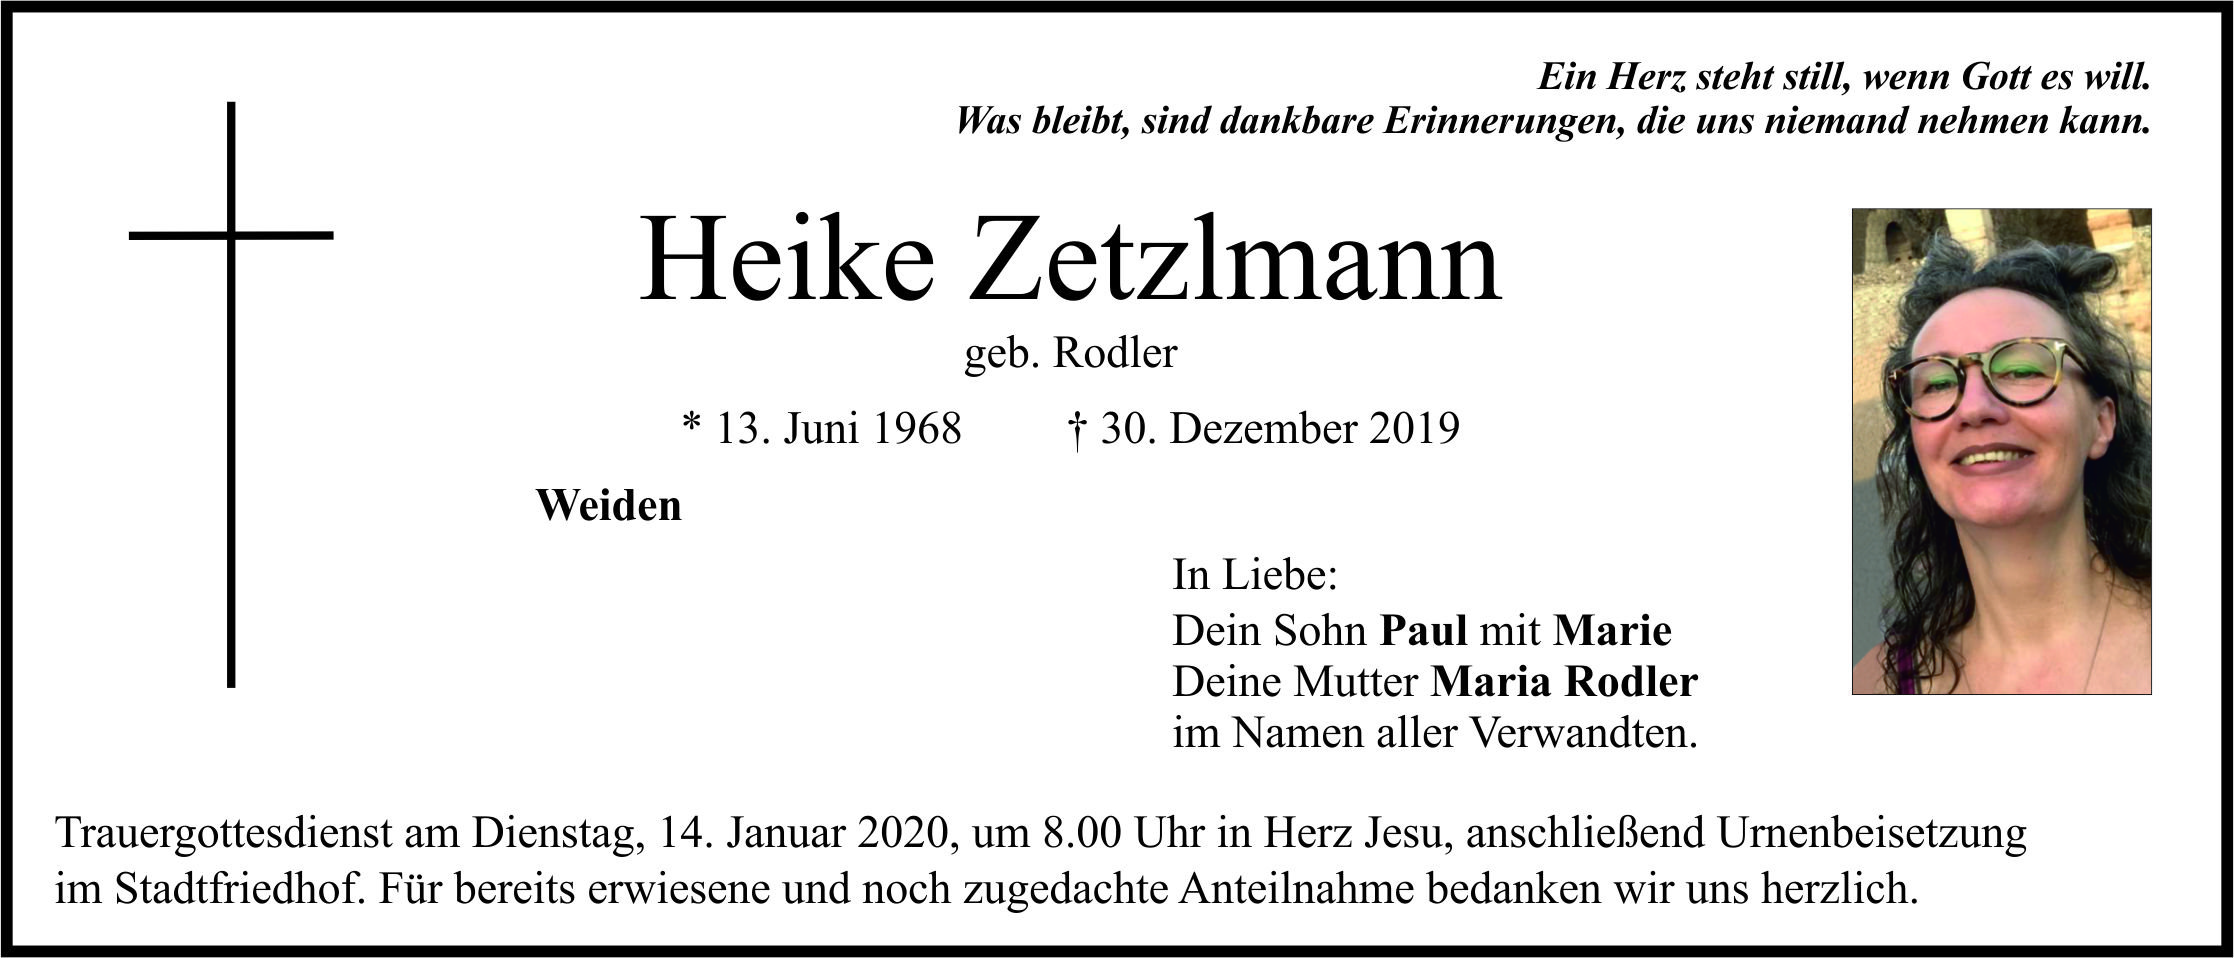 Traueranzeige Heike Zetzlmann, Weiden